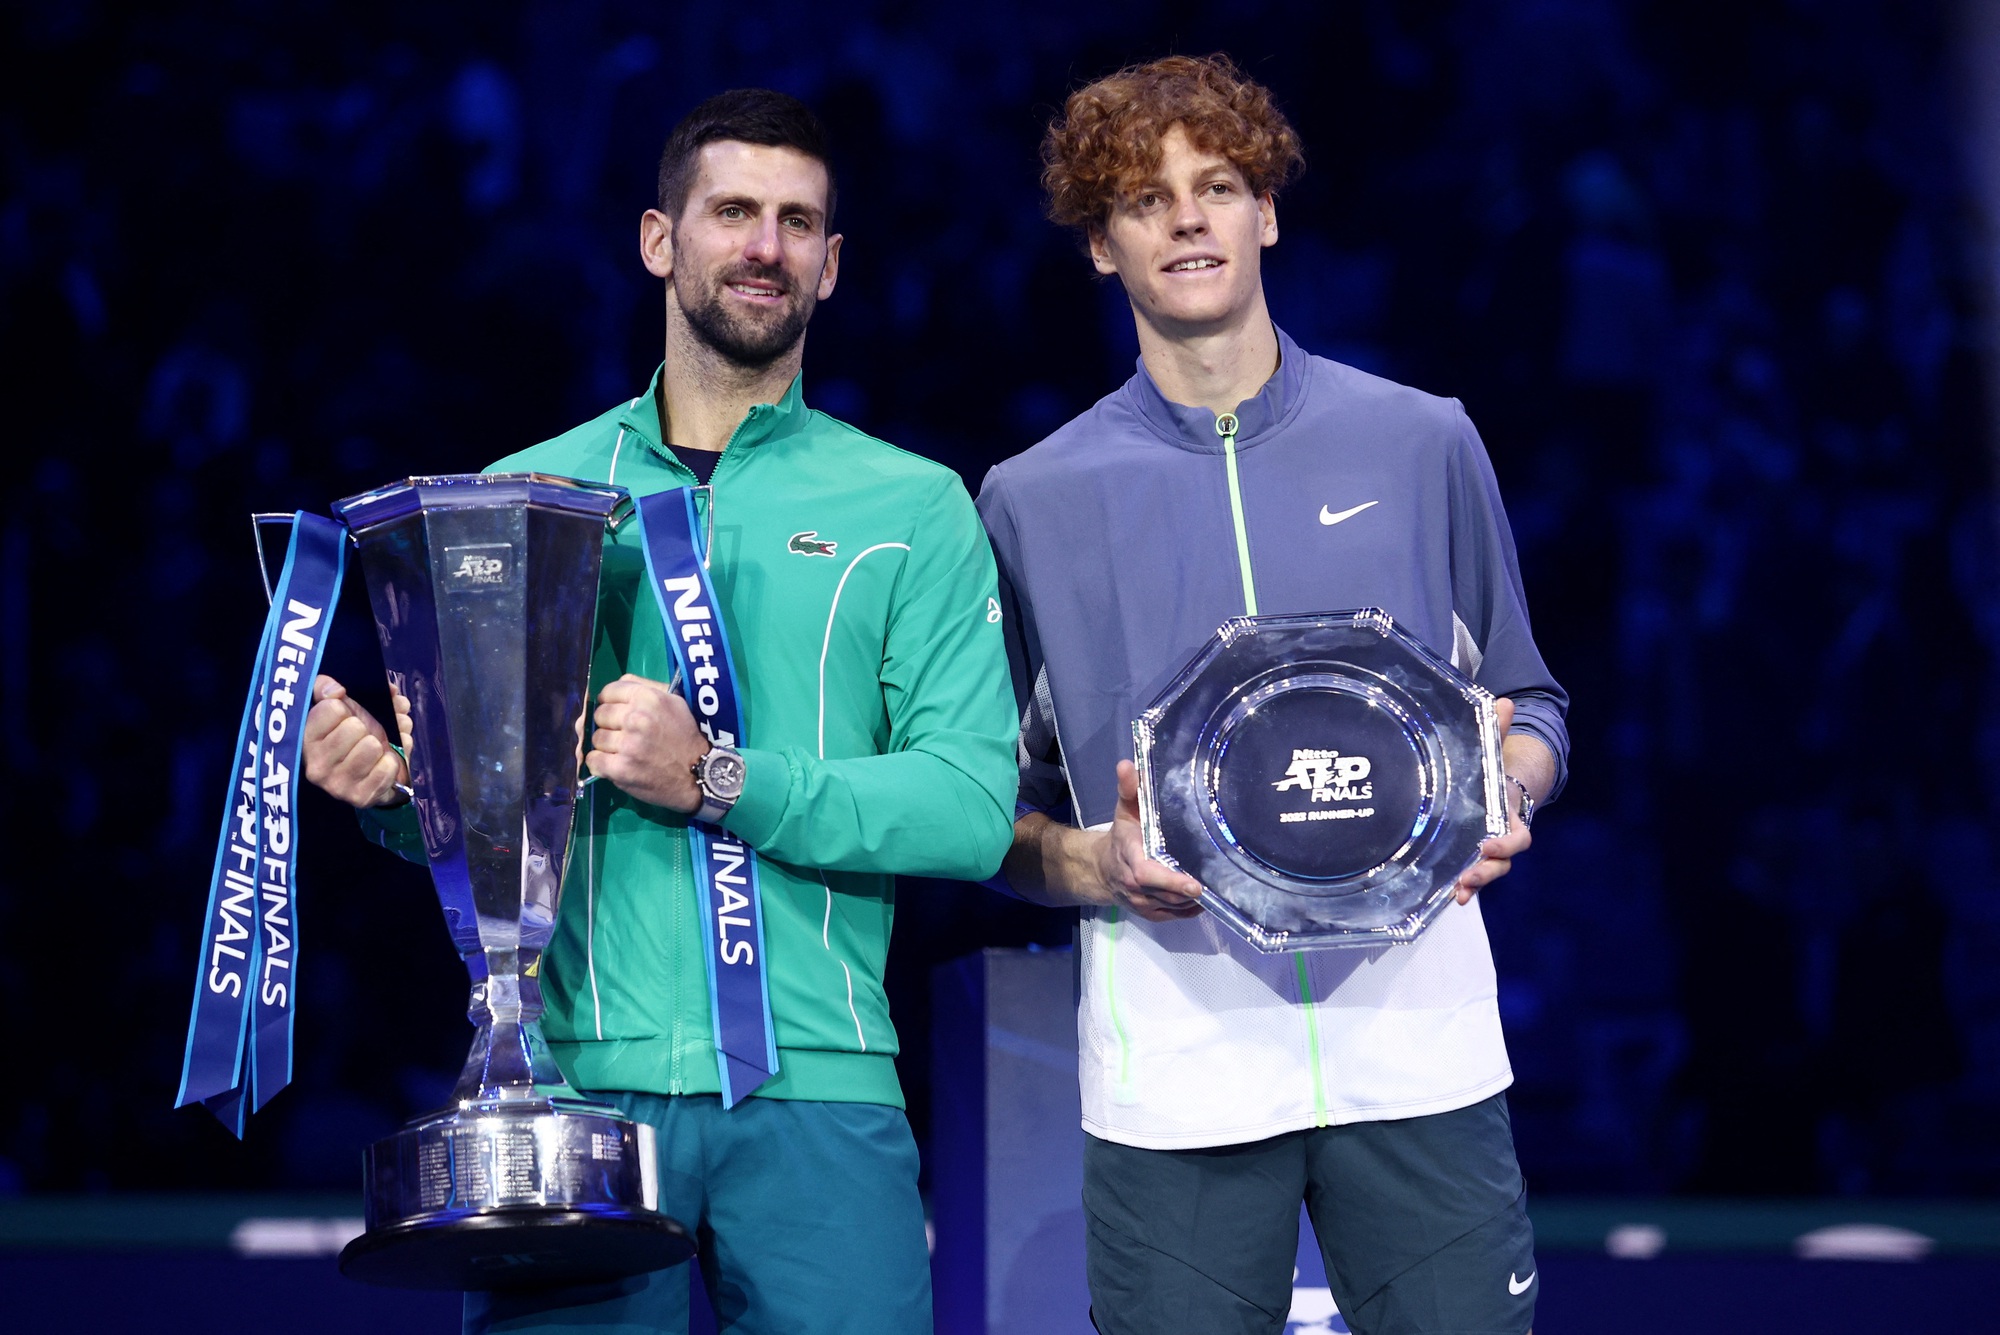 Thắng Sinner, Djokovic lần thứ 7 đăng quang ATP Final cùng số tiền thưởng khổng lồ - Ảnh 1.